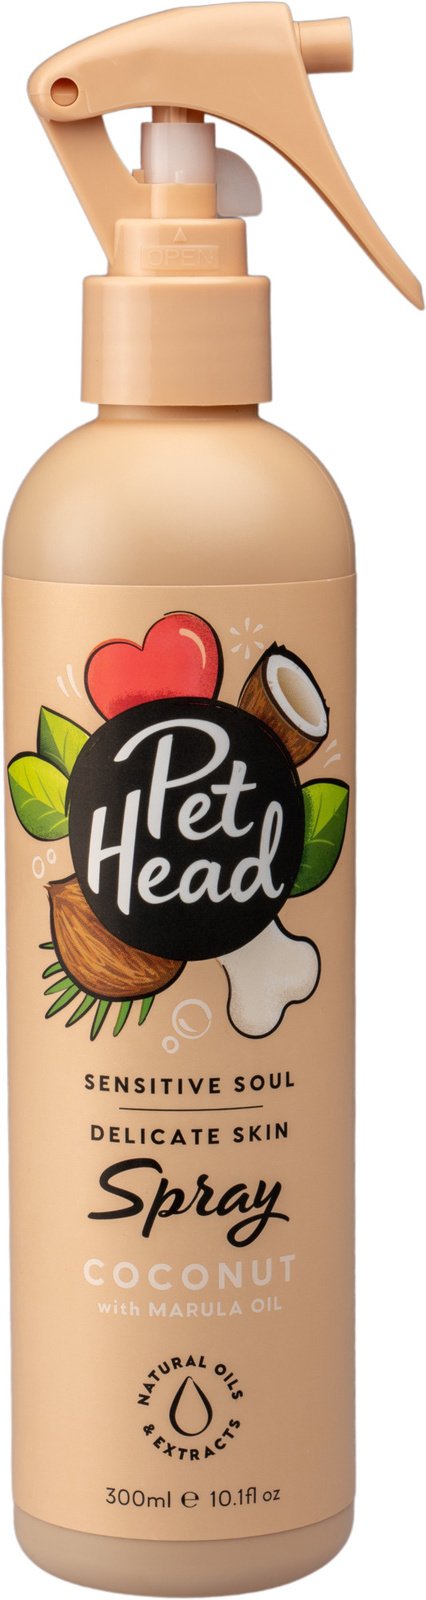 Pet Head Pet Head спрей для очищения шерсти собак 'Пушистый привереда' с ароматом кокоса (300 мл)